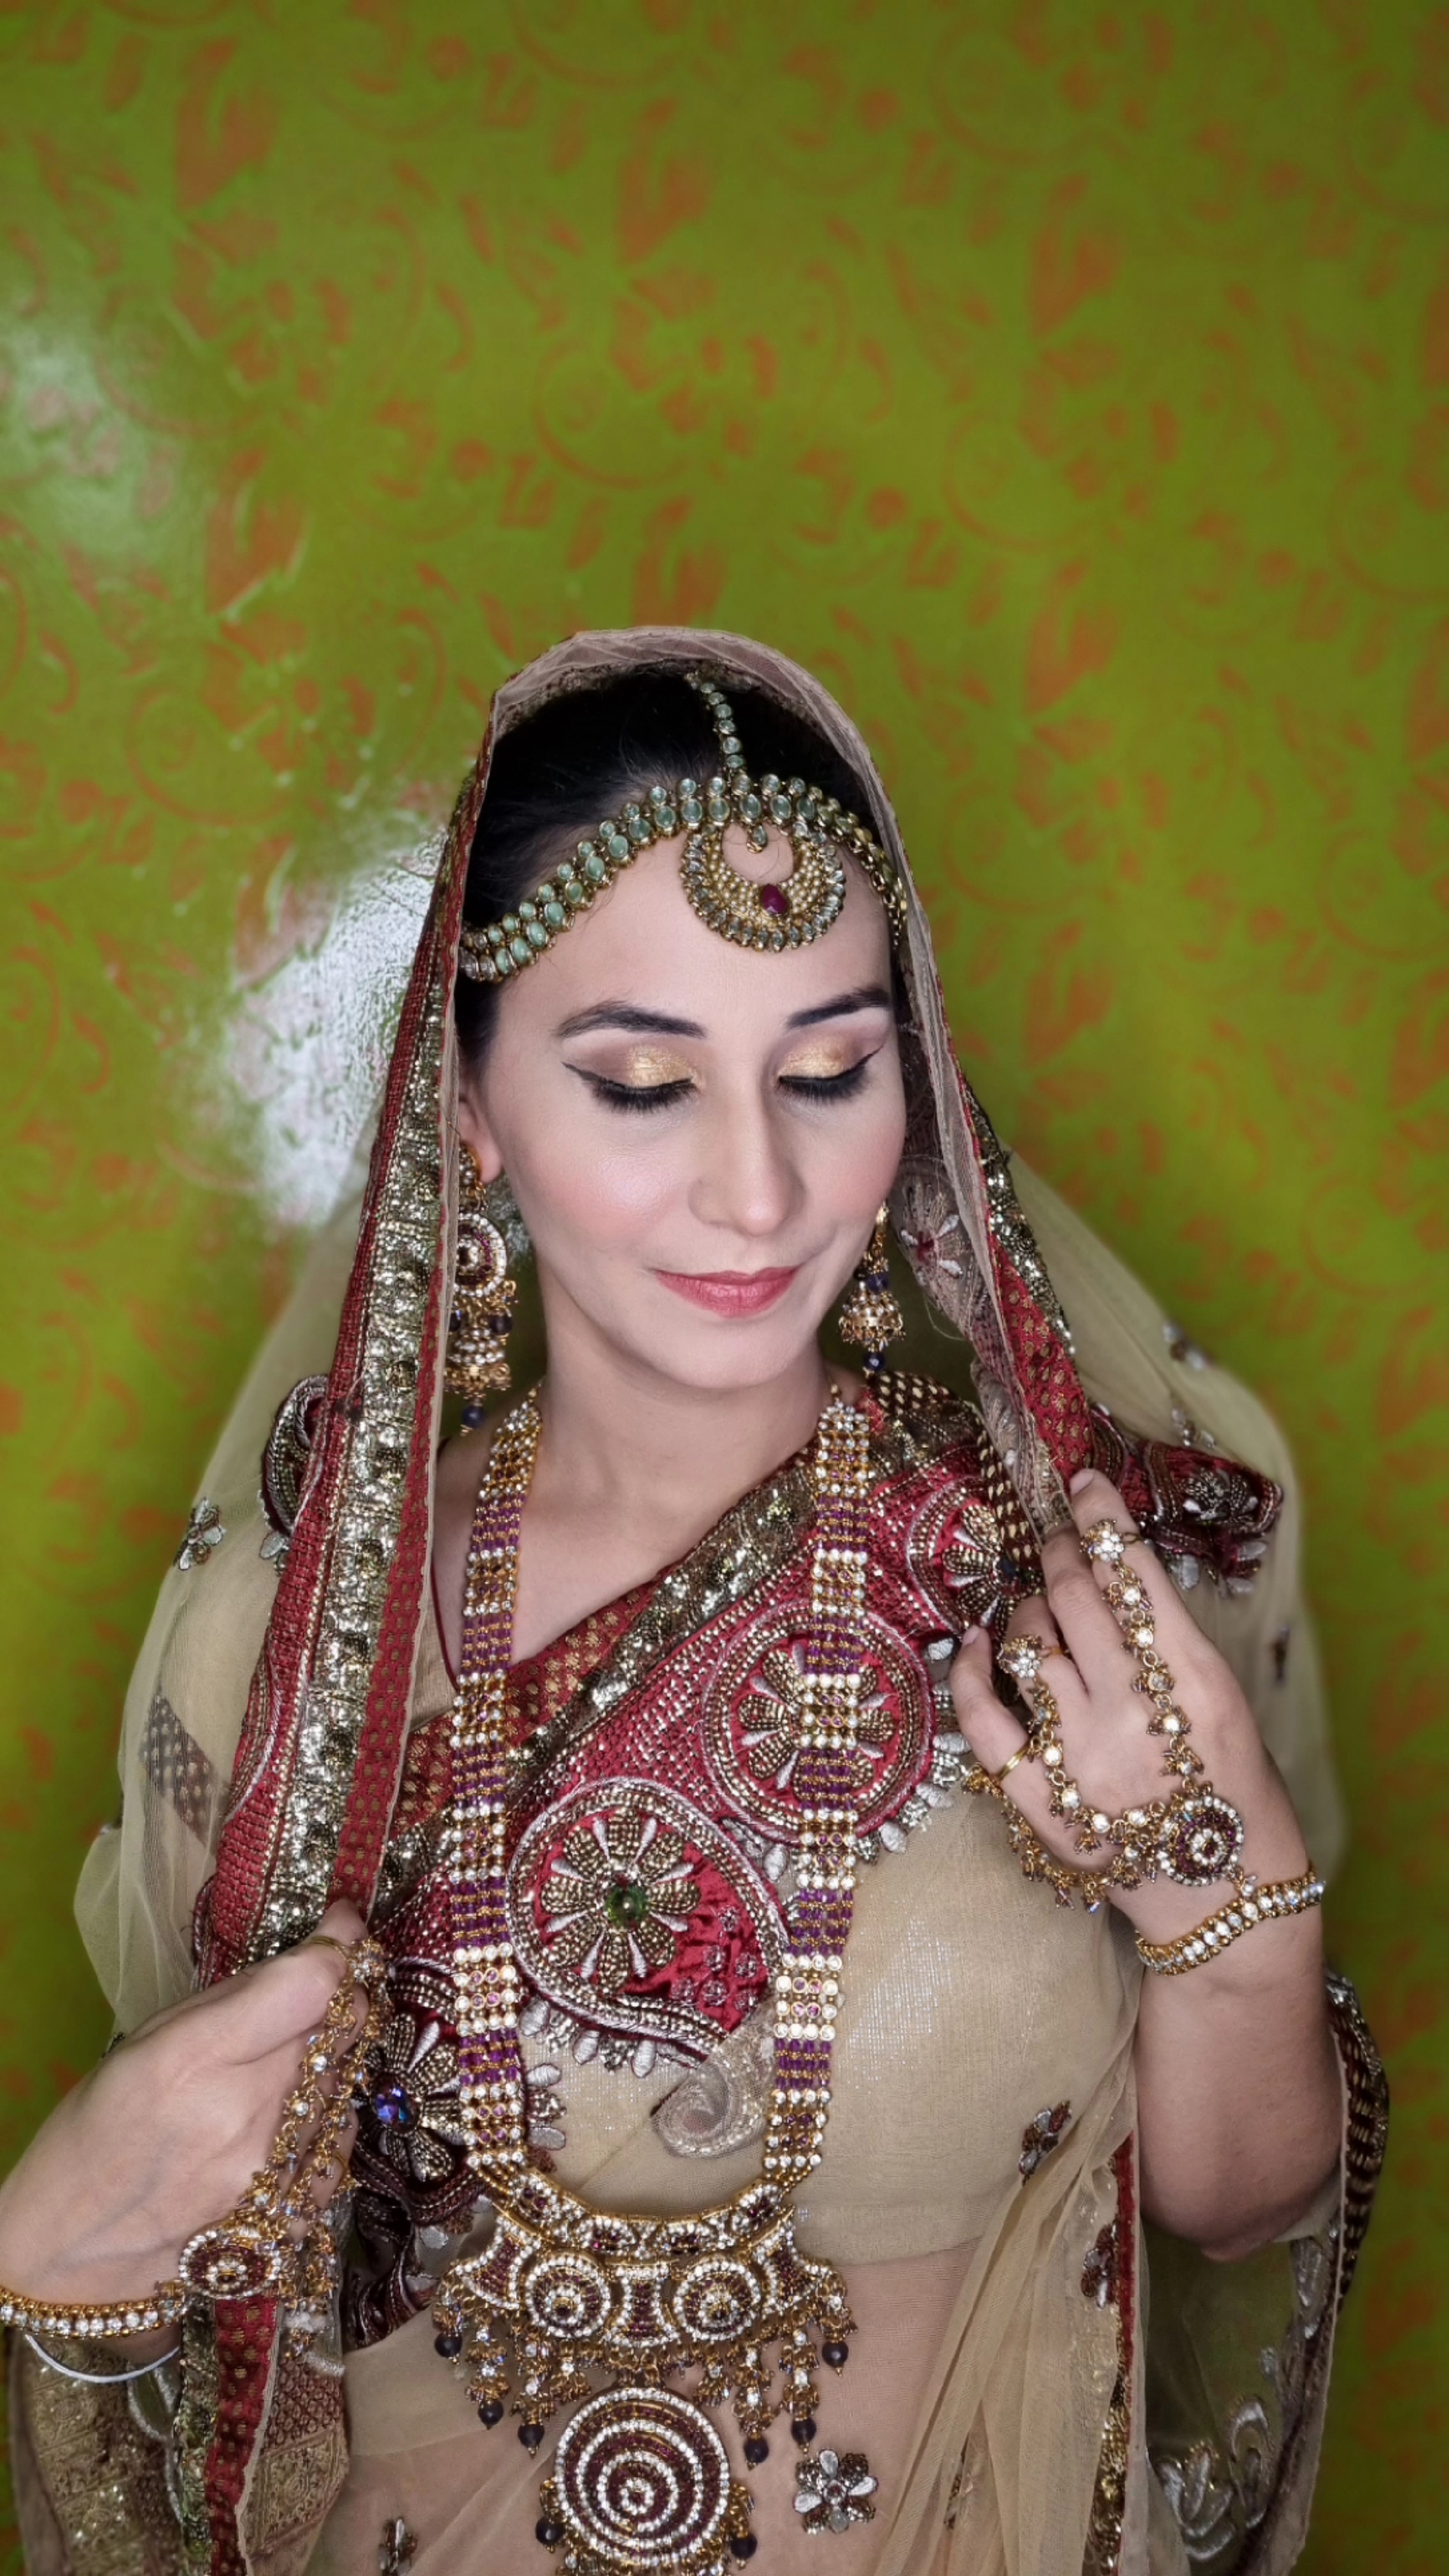 sagar-tokas-makeup-artist-delhi-ncr